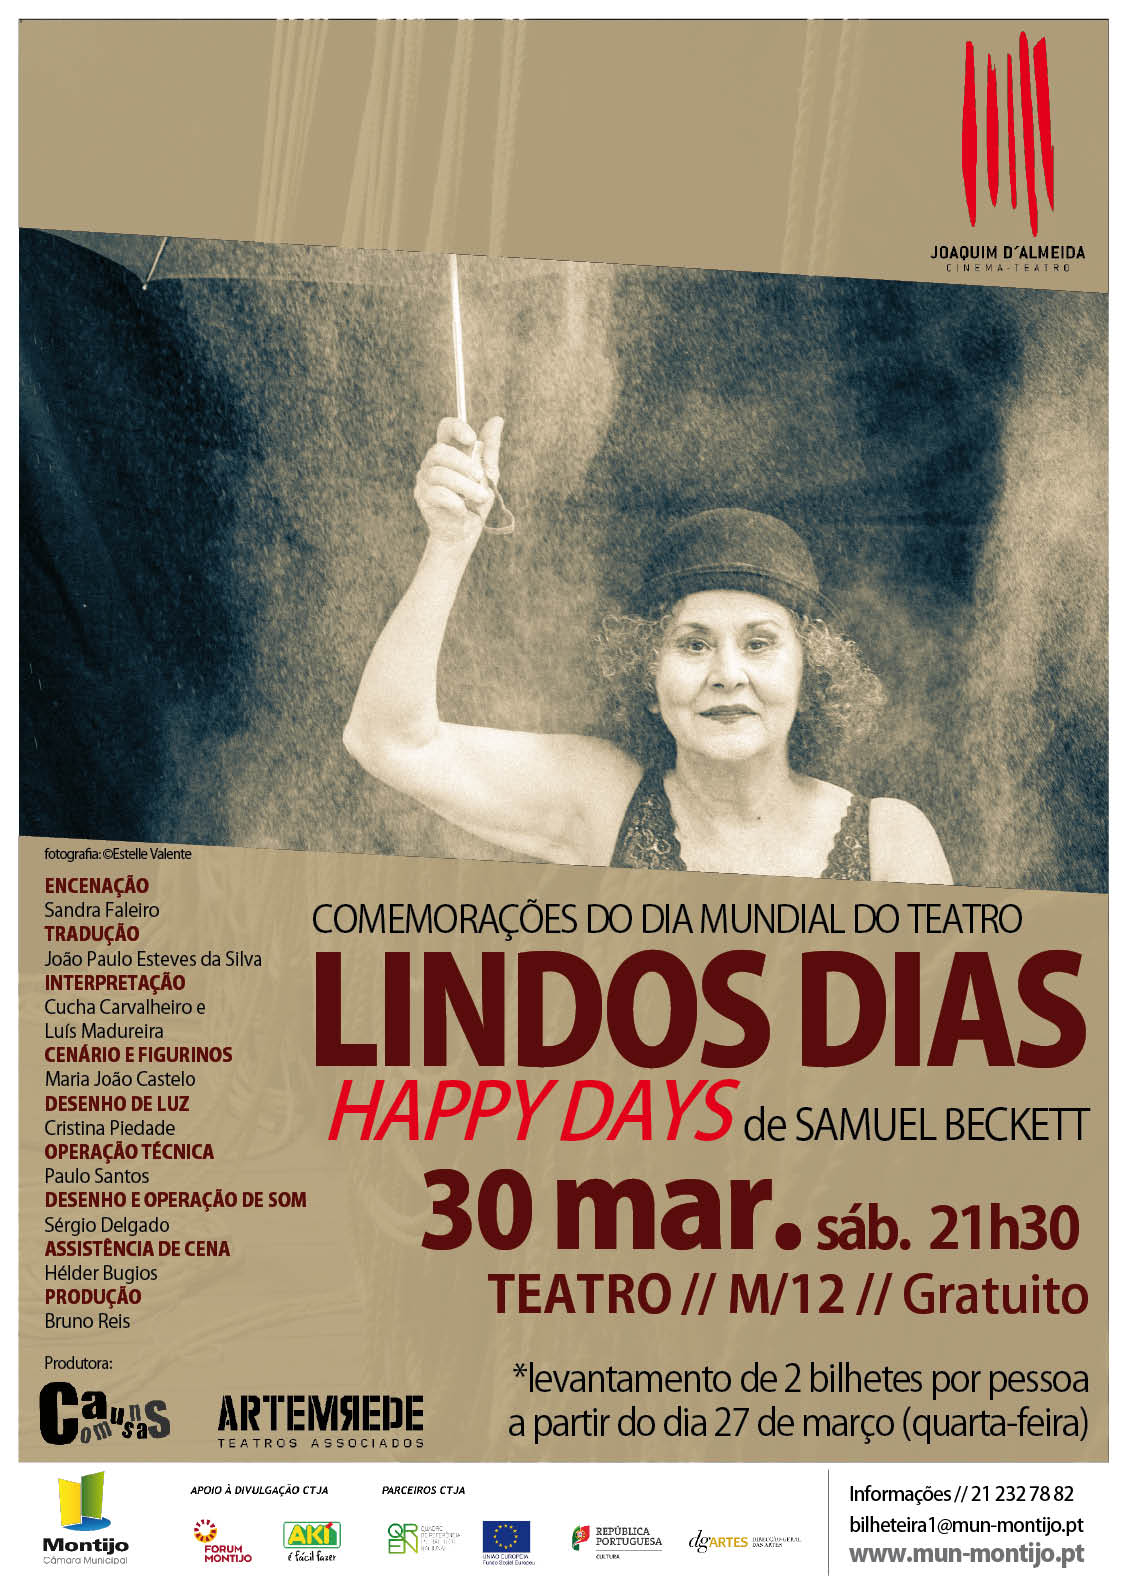 divulgacao LINDOS DIAS Happy Days de Samuel Beckett